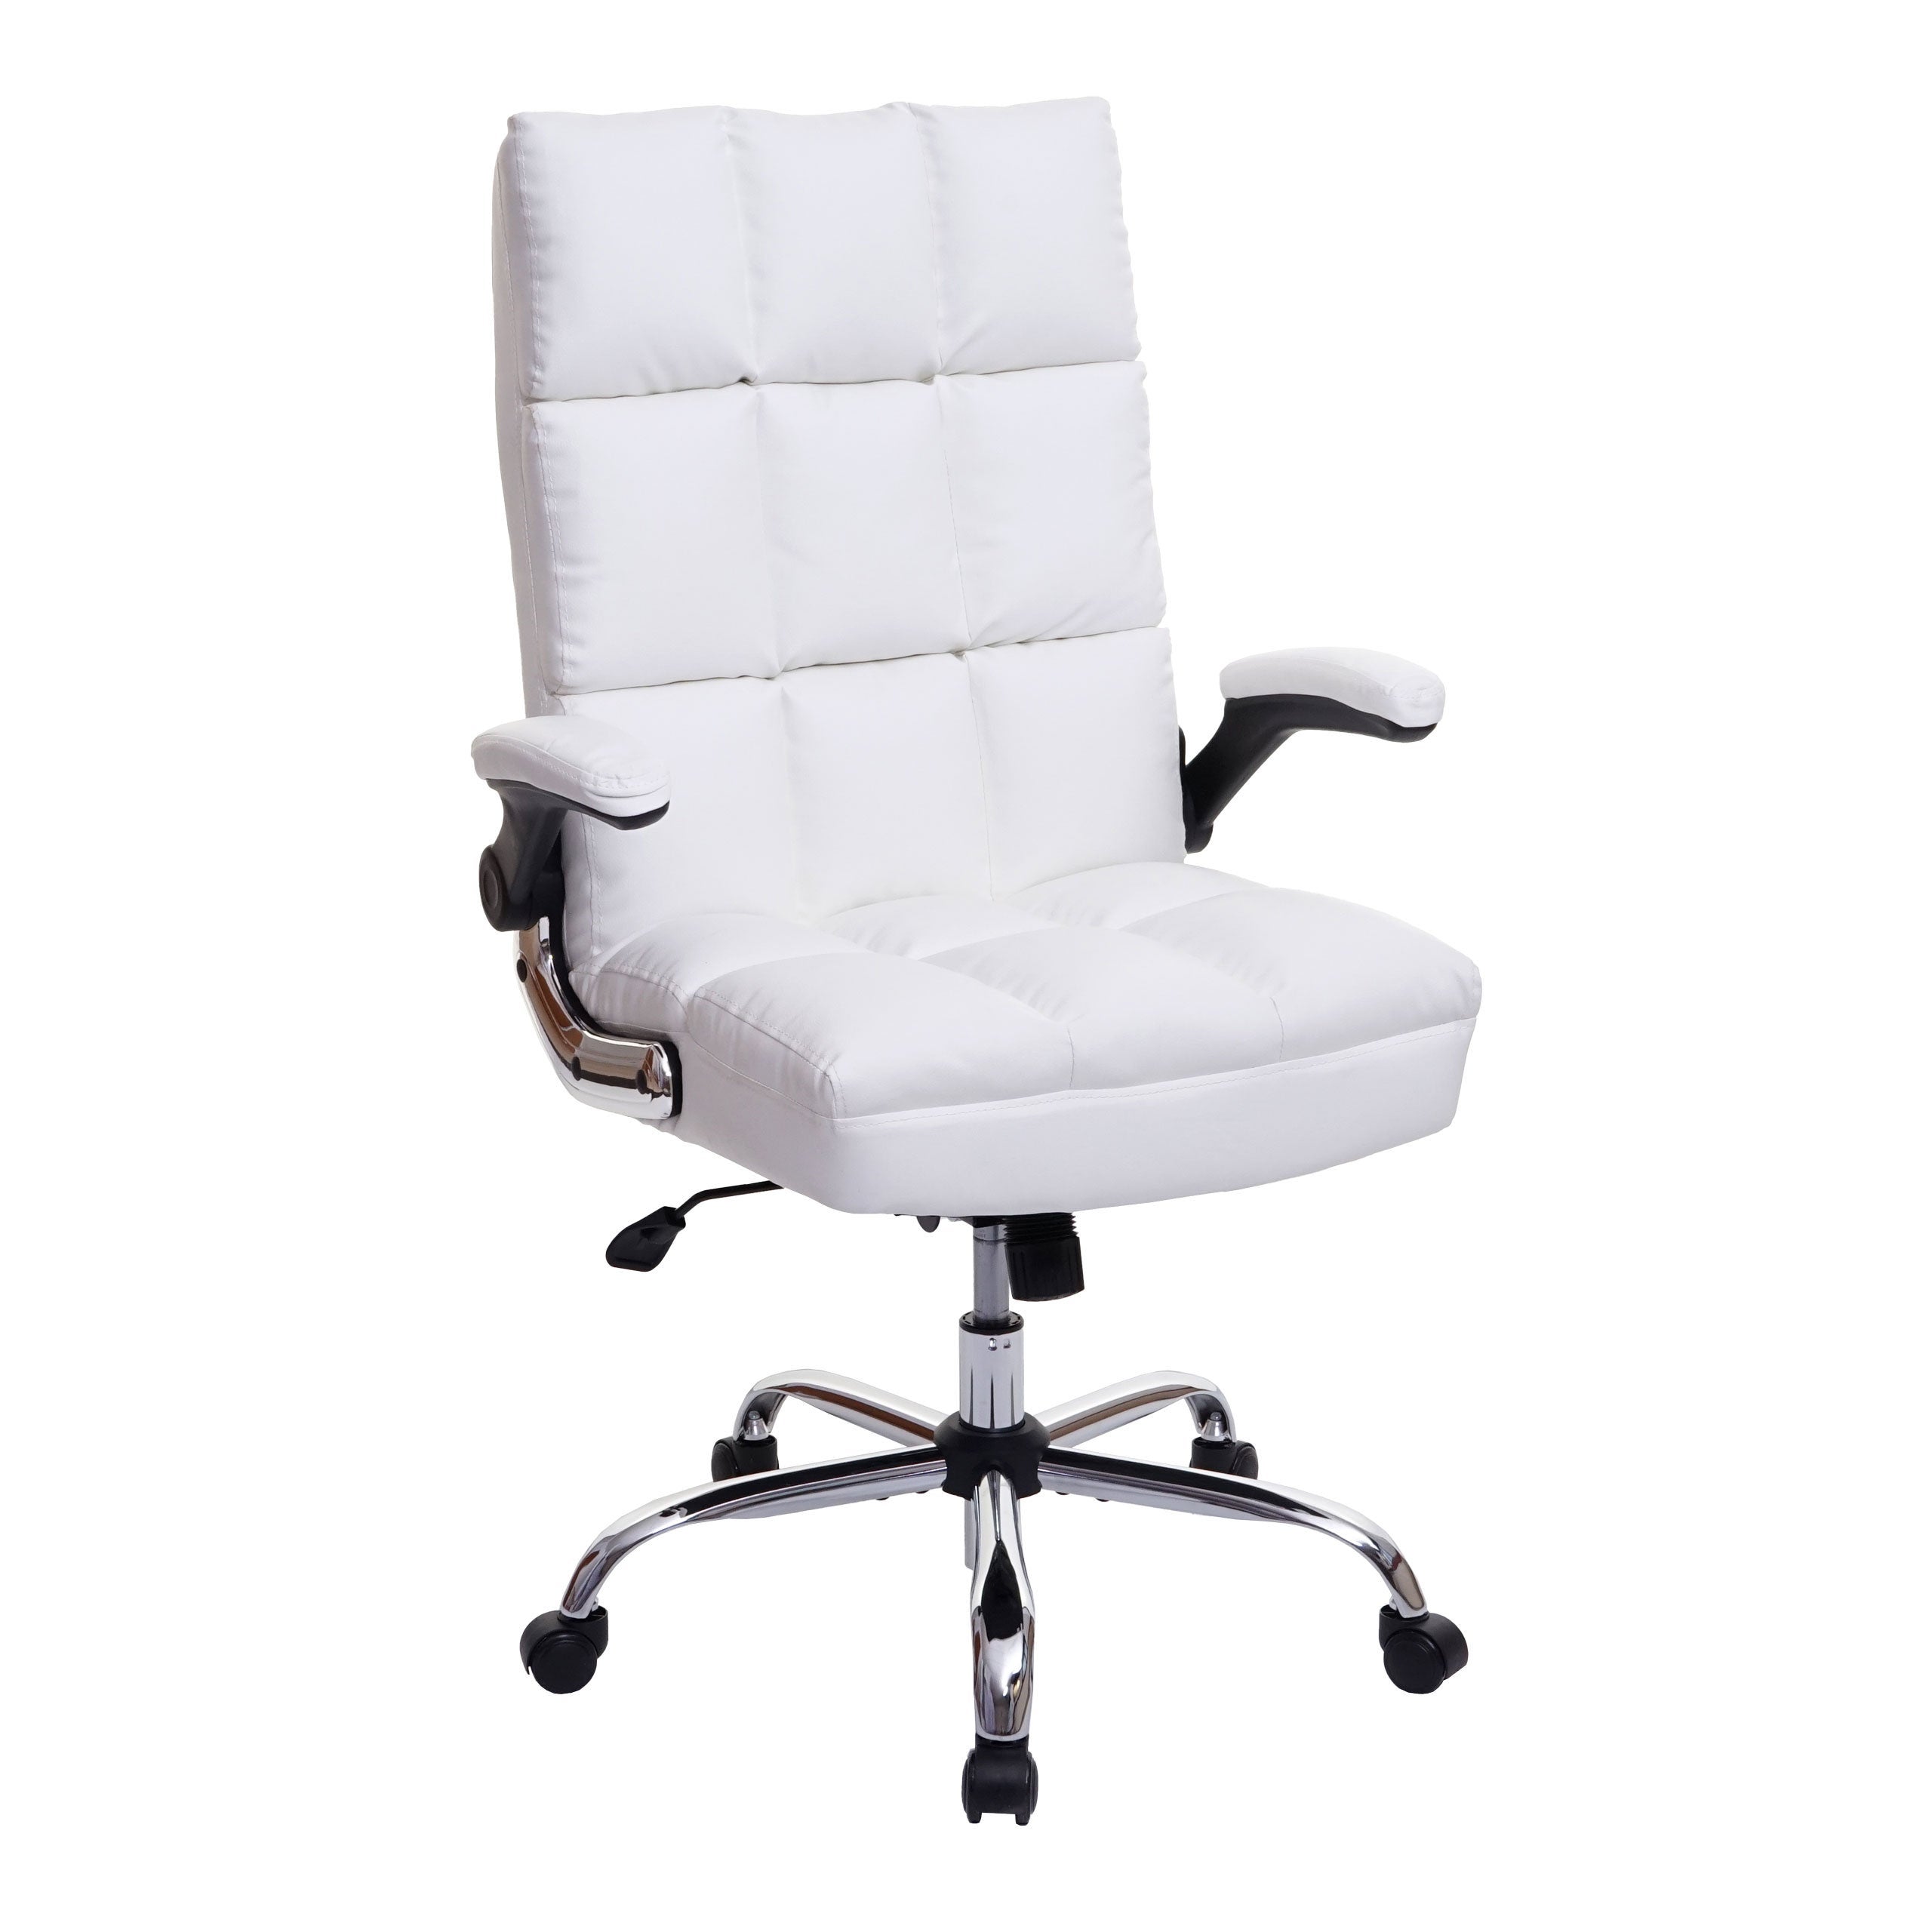 Chaise de bureau pivotante réglable en hauteur en synthétique blanc forme ergonomique 04_0001872 | Leroy Merlin